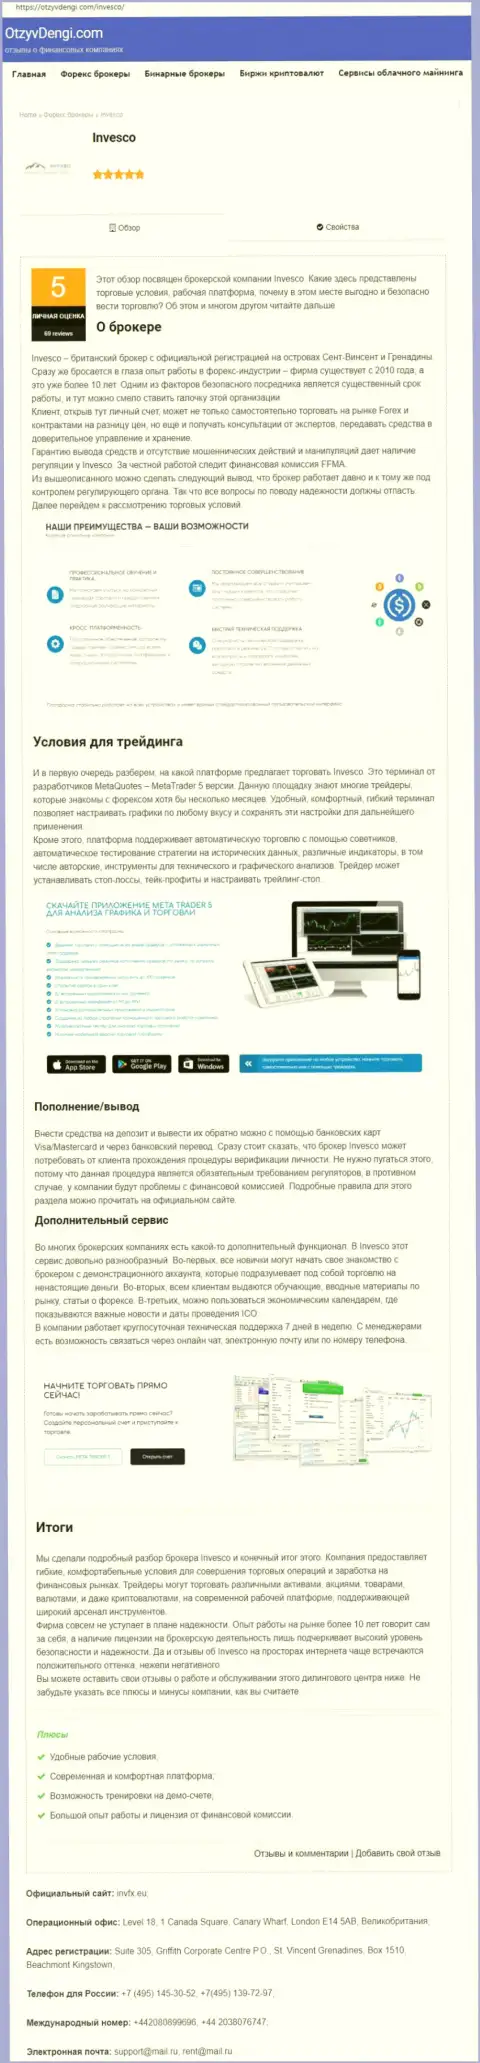 Информационный сервис otzyvdengi com предоставил статью об ФОРЕКС дилинговой организации Invesco Limited